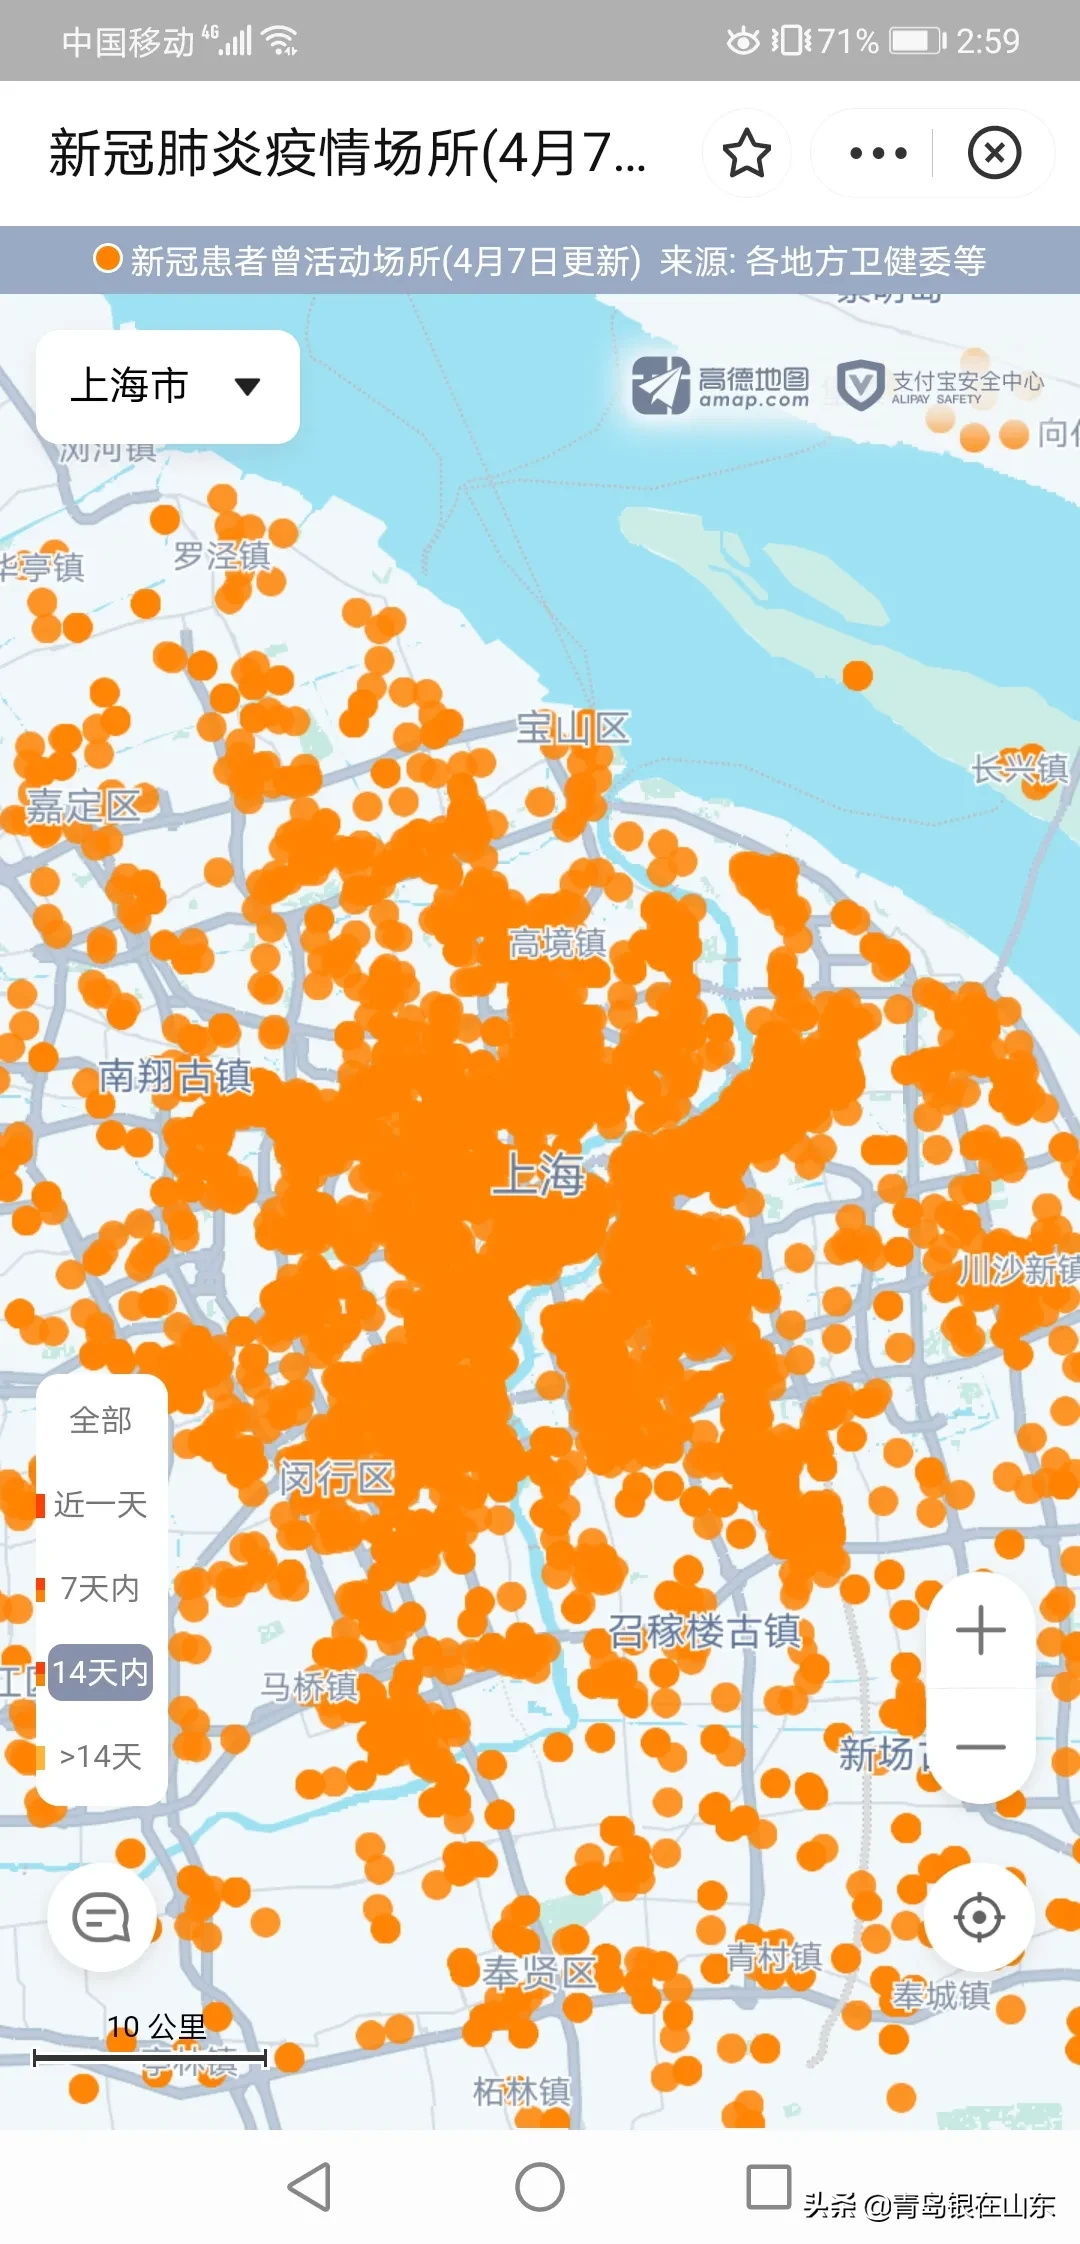 上海市新冠疫情分布图图片